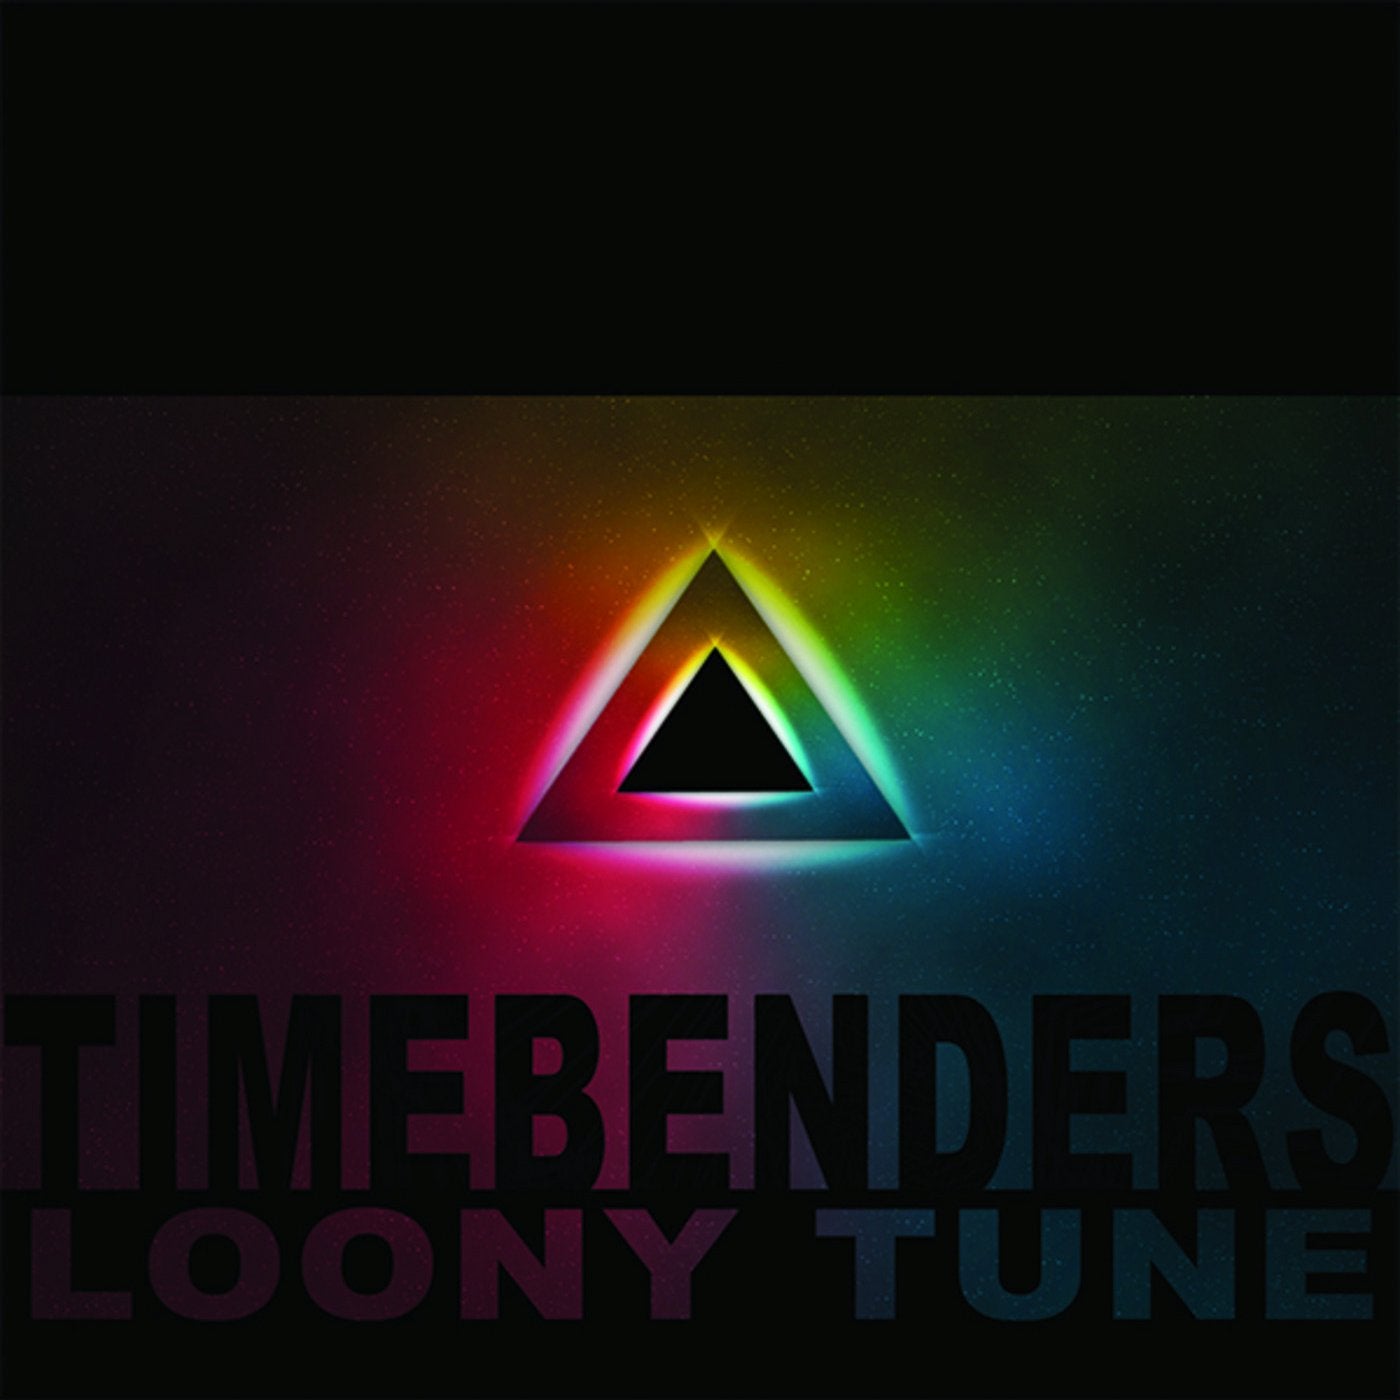 Timebenders